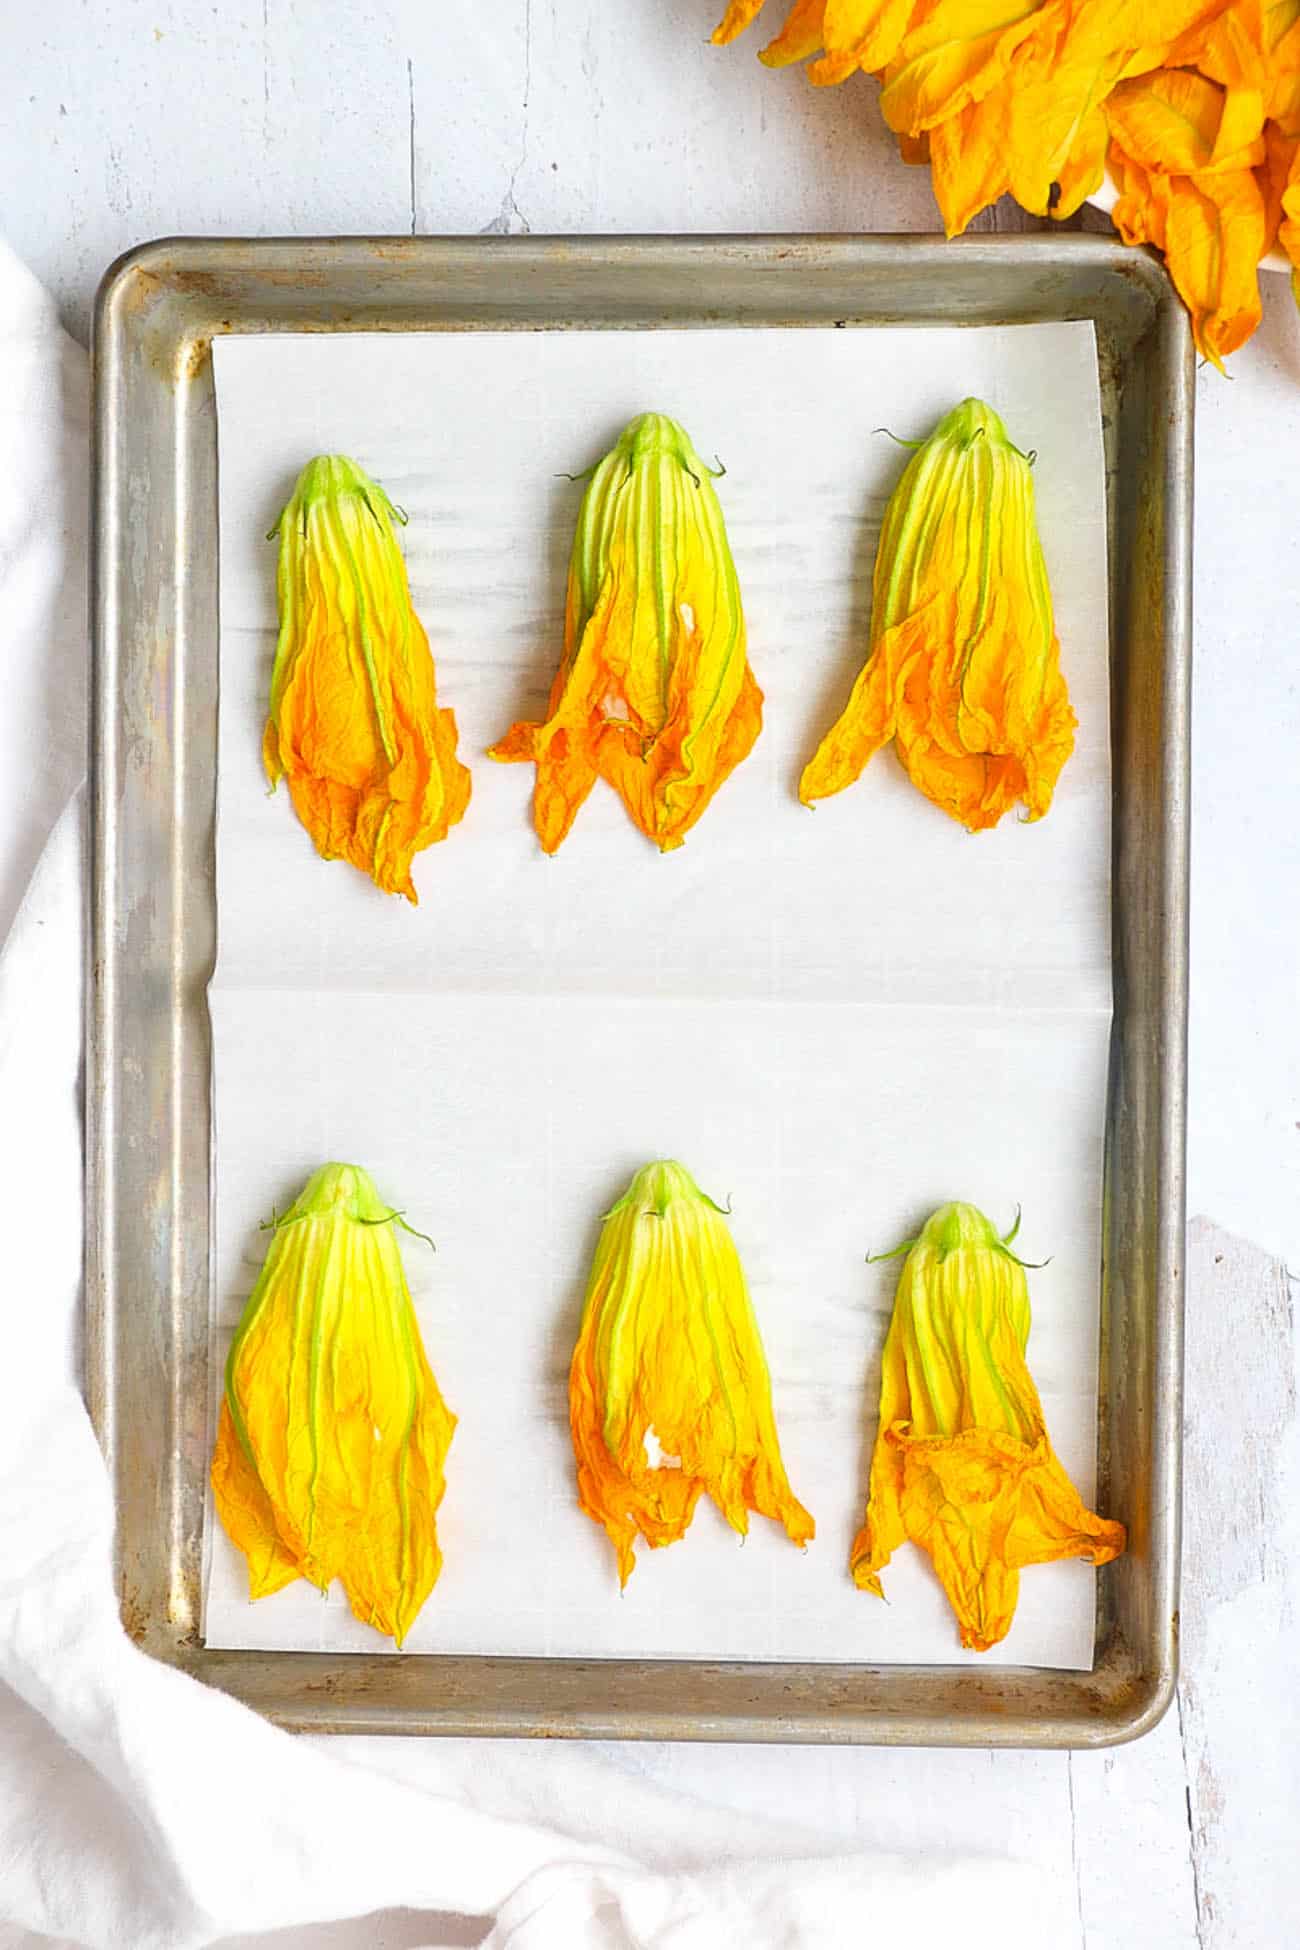 stuffed zucchini flowers on a baking sheet